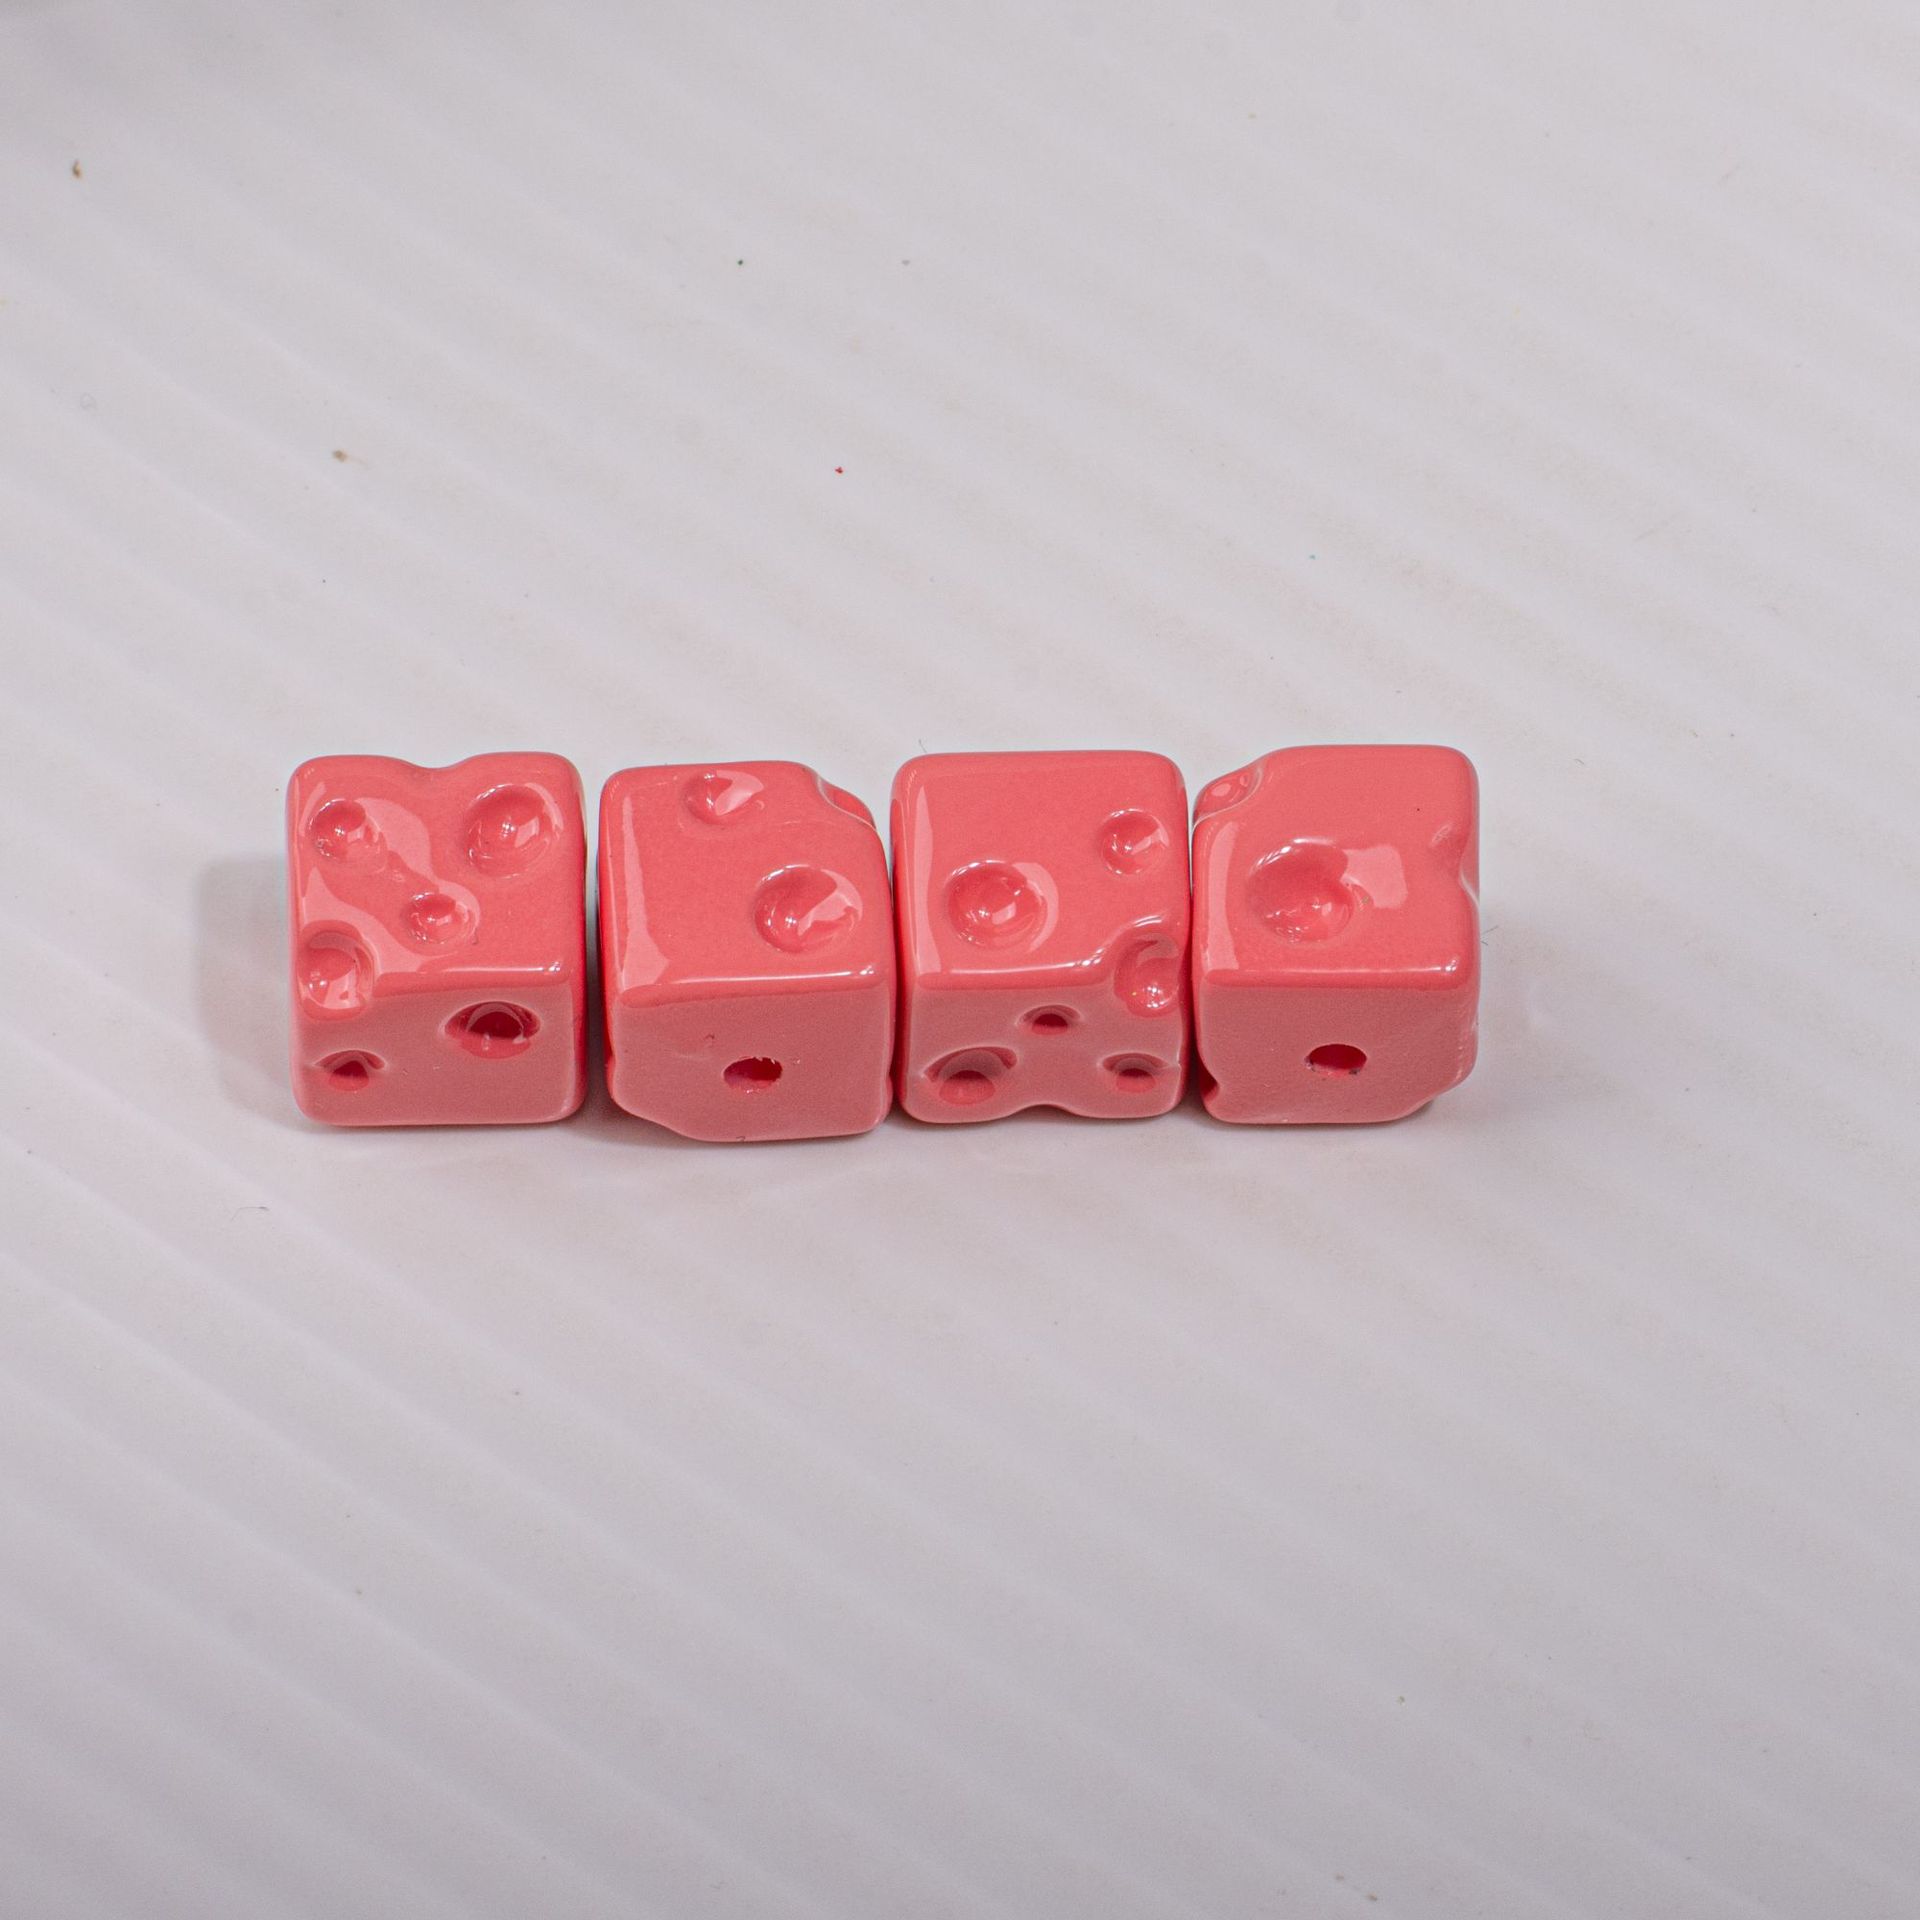 6:濃いピンク